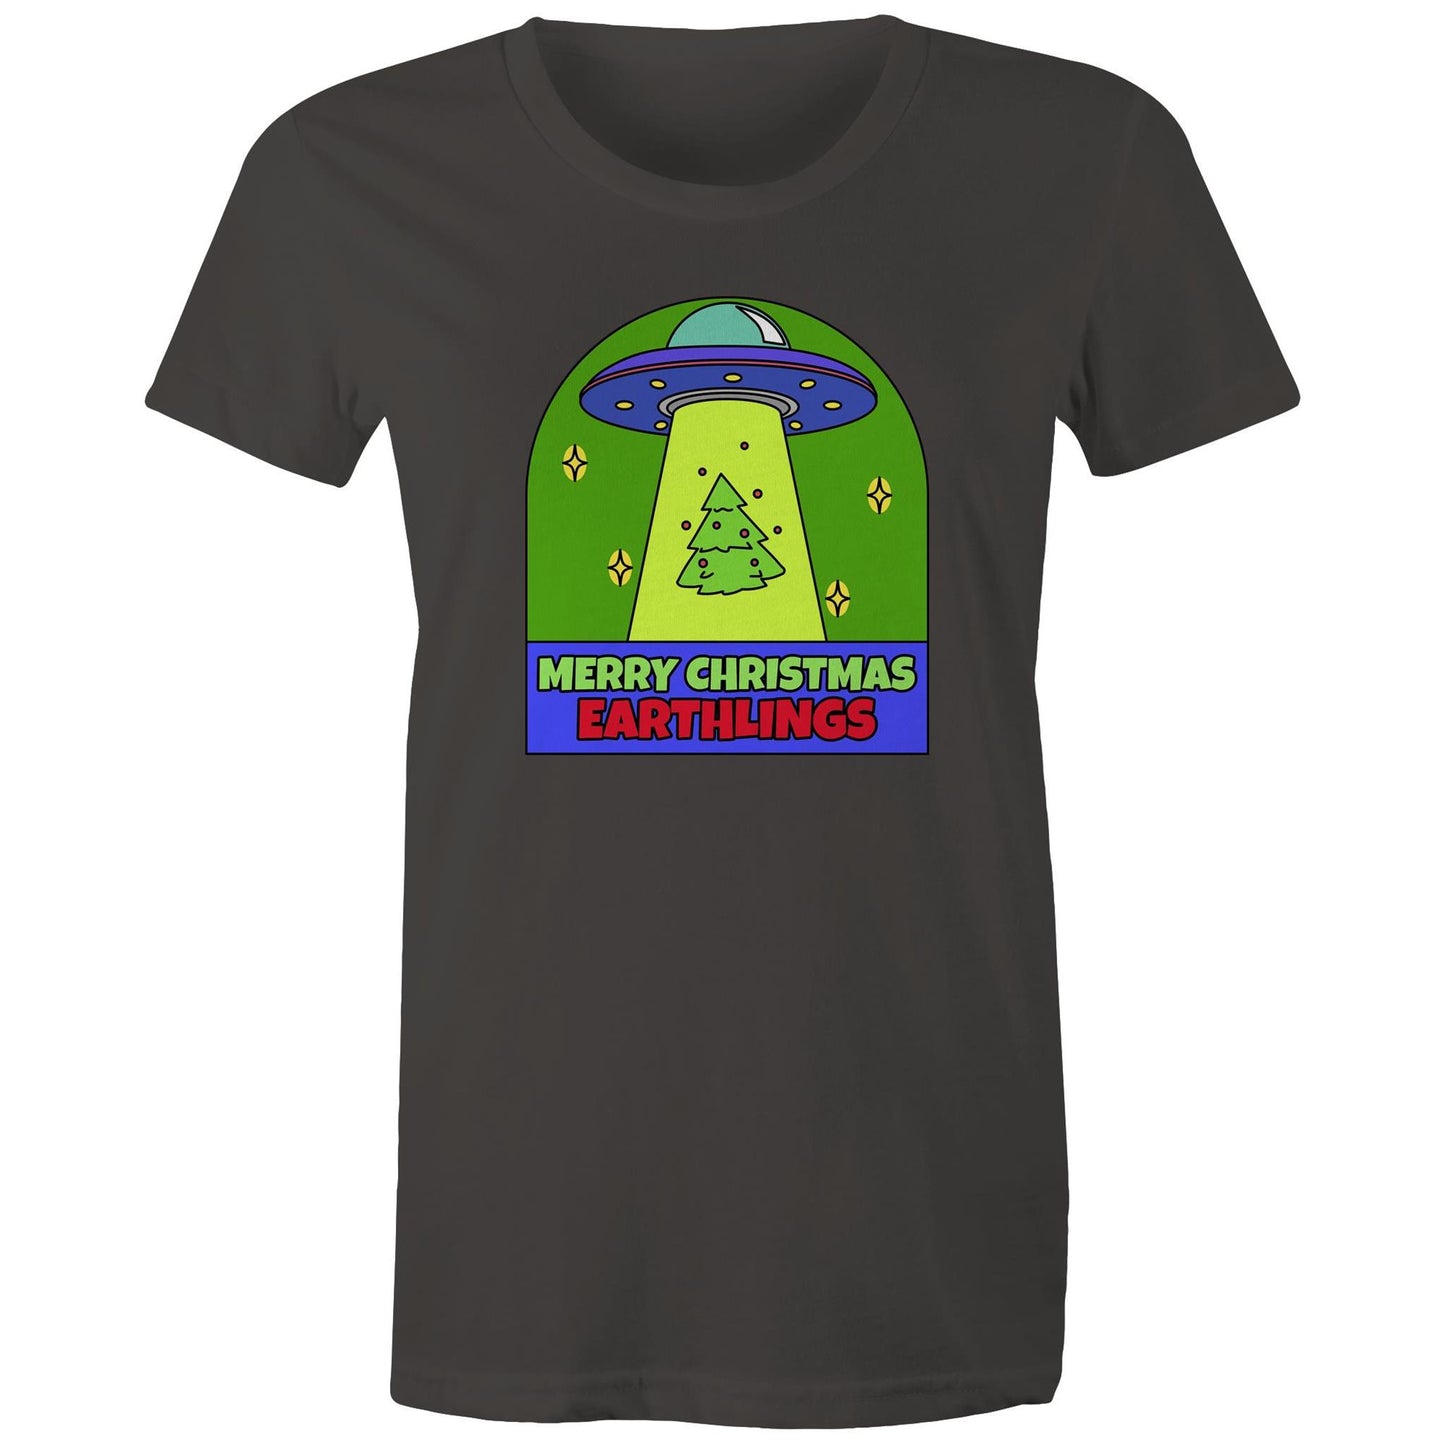 Merry Christmas Earthlings, UFO - Womens T-shirt Charcoal Christmas Womens T-shirt Merry Christmas